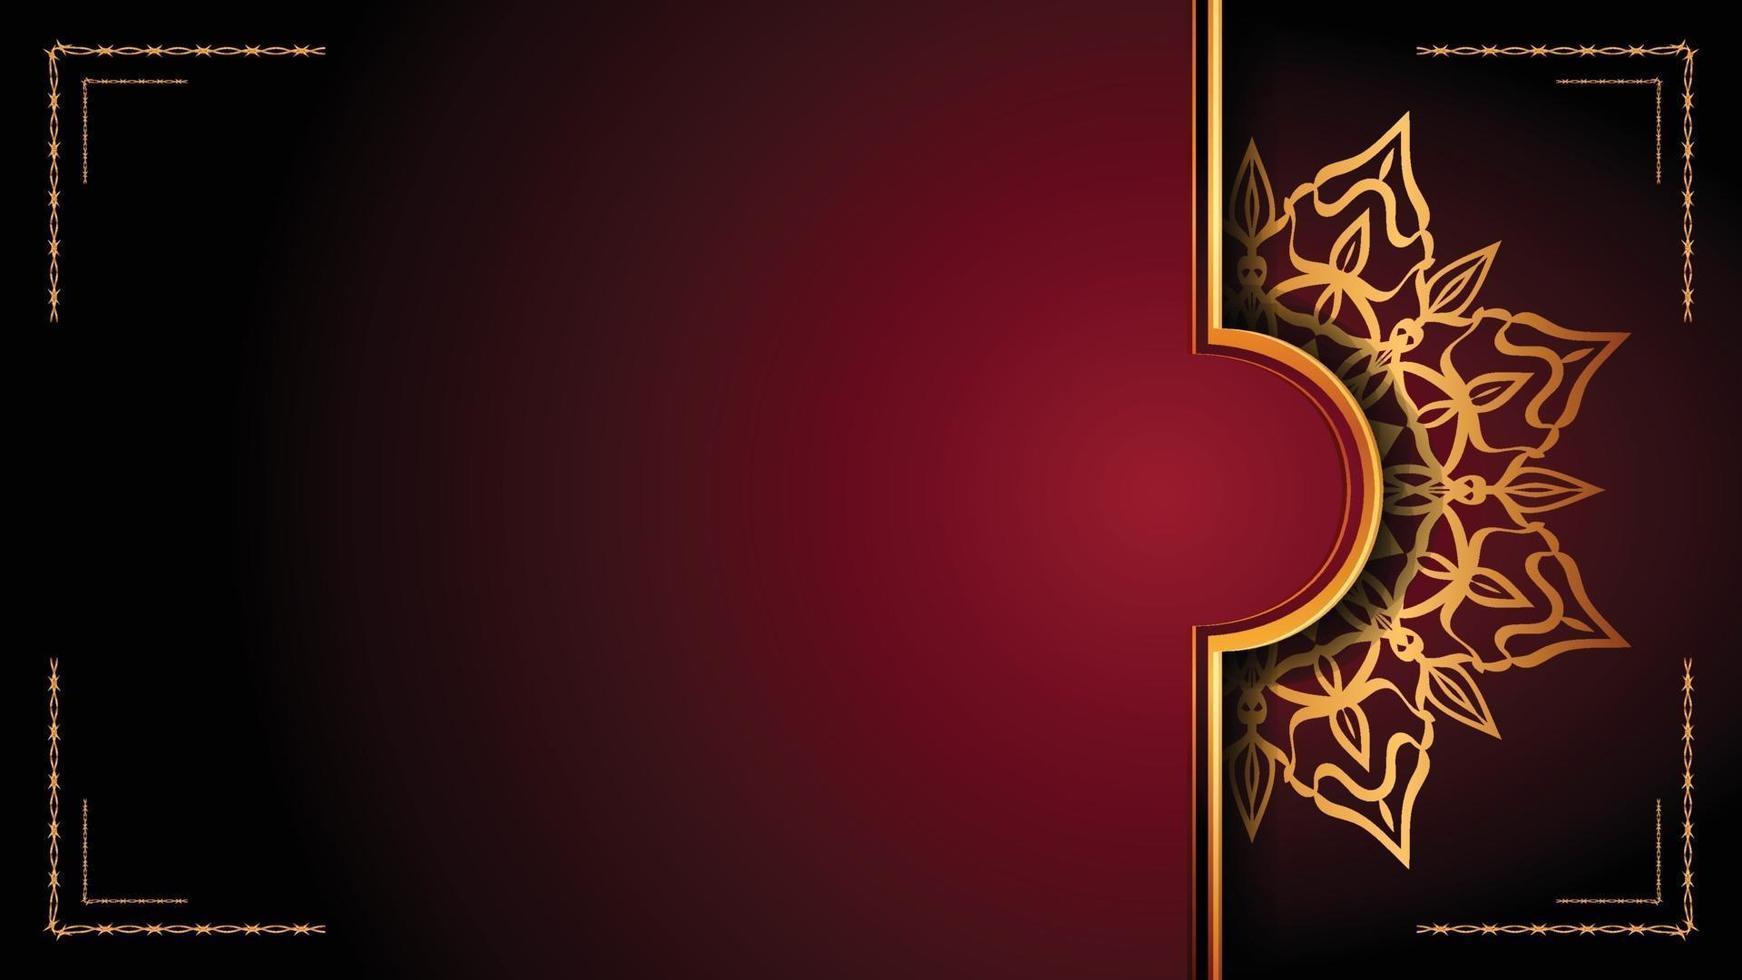 Luxus-Mandala-Zierhintergrunddesign mit goldenem Arabeskenmusterstil. dekorative Mandala-Verzierung für Druck, Broschüre, Banner, Umschlag, Plakat, Einladungskarte. vektor